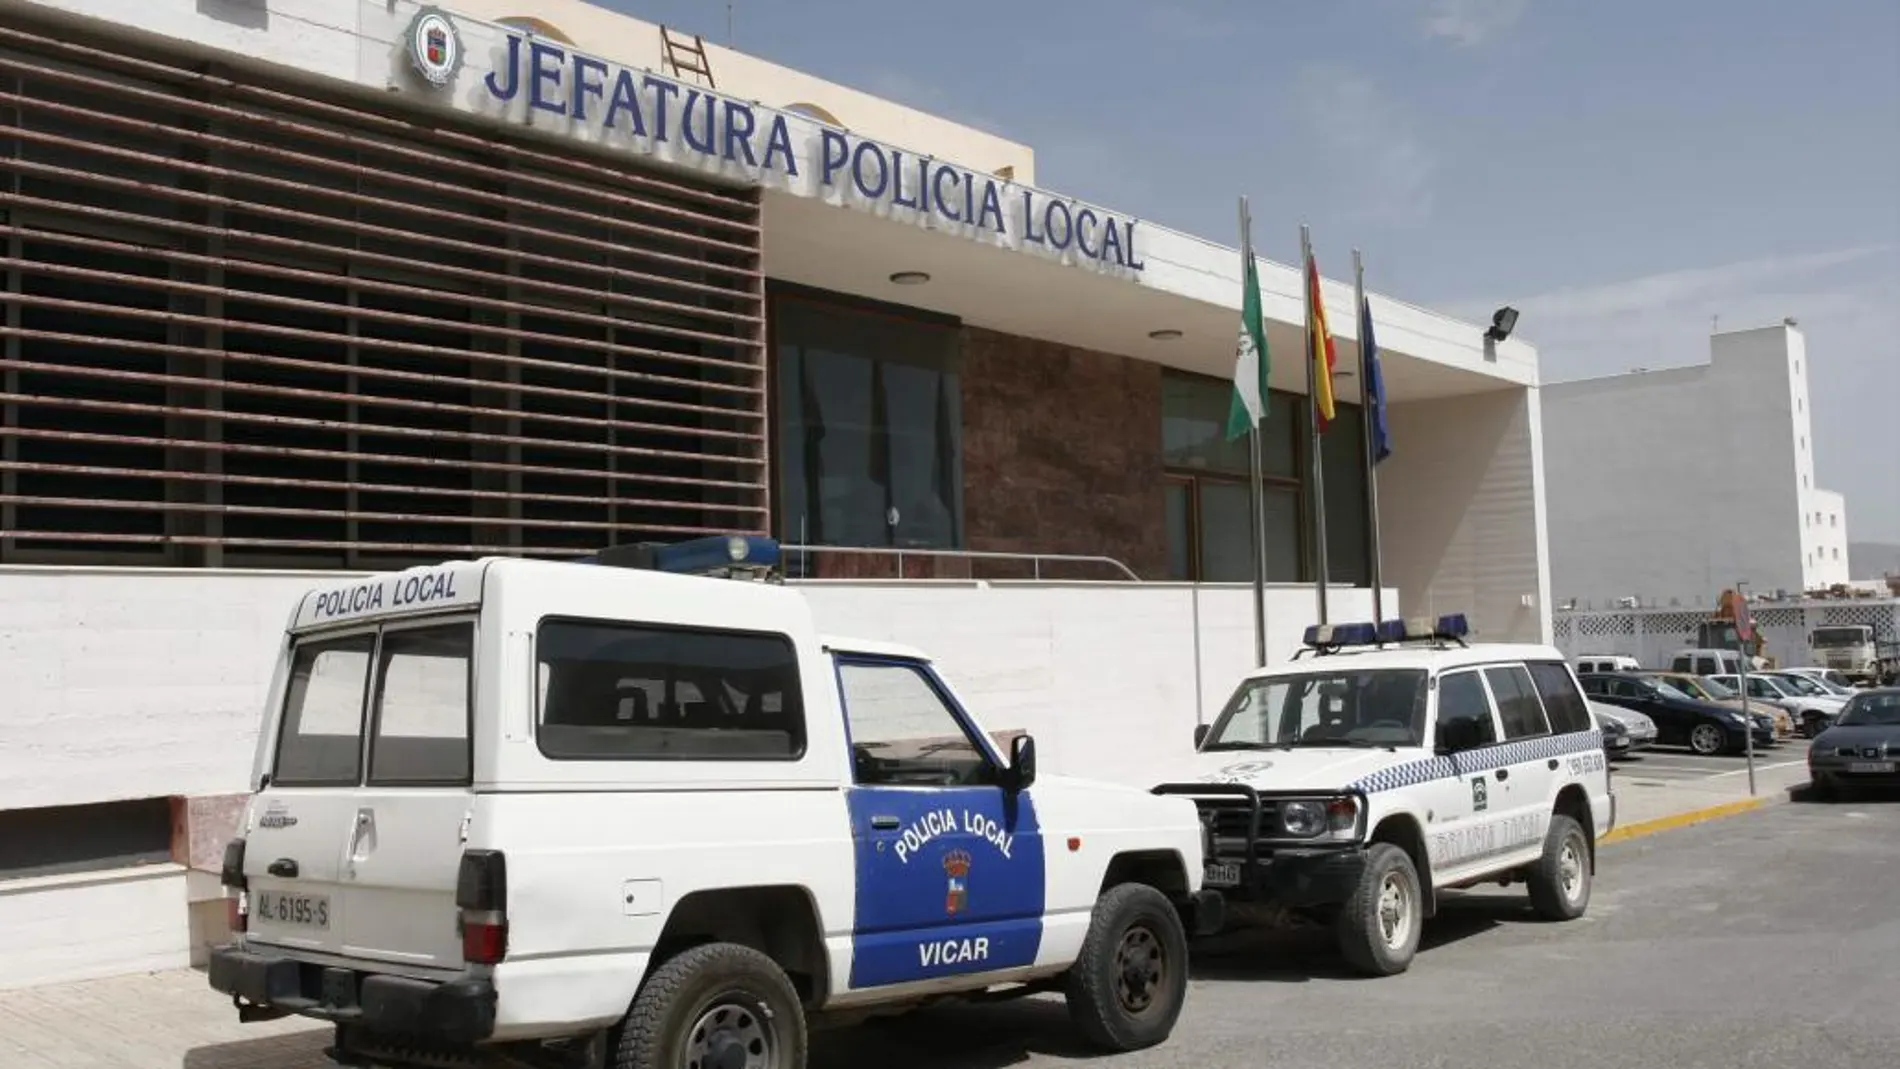 El hombre se ha suicidado en el calabozo de la Policía Local de Roquetas de Mar